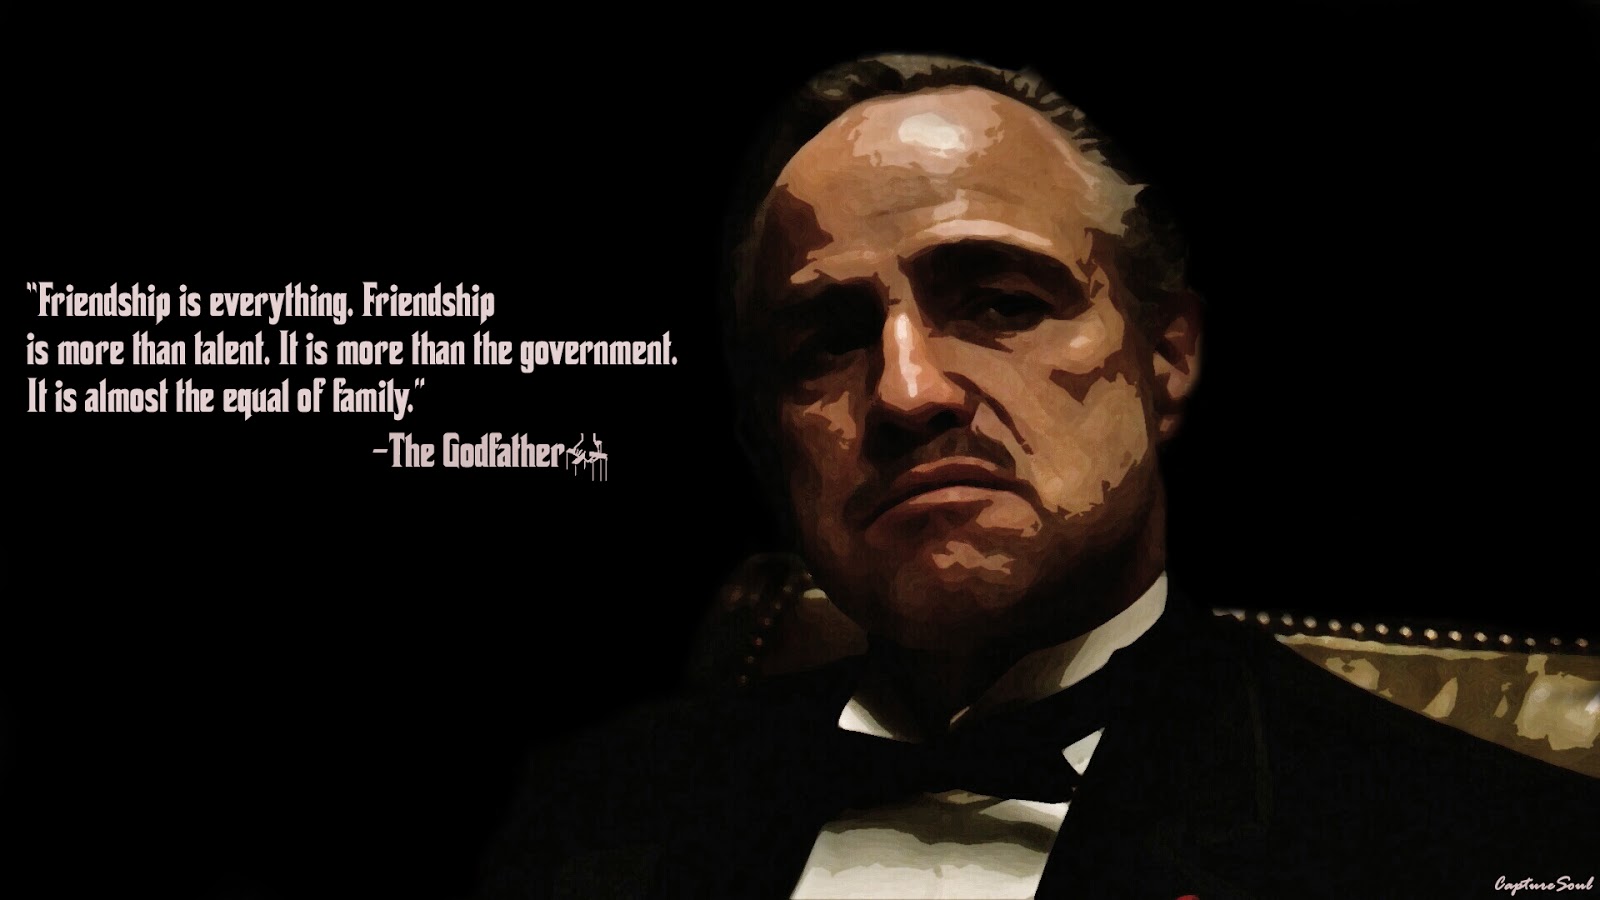 Godfather vito corleone quotes 45 Memorable